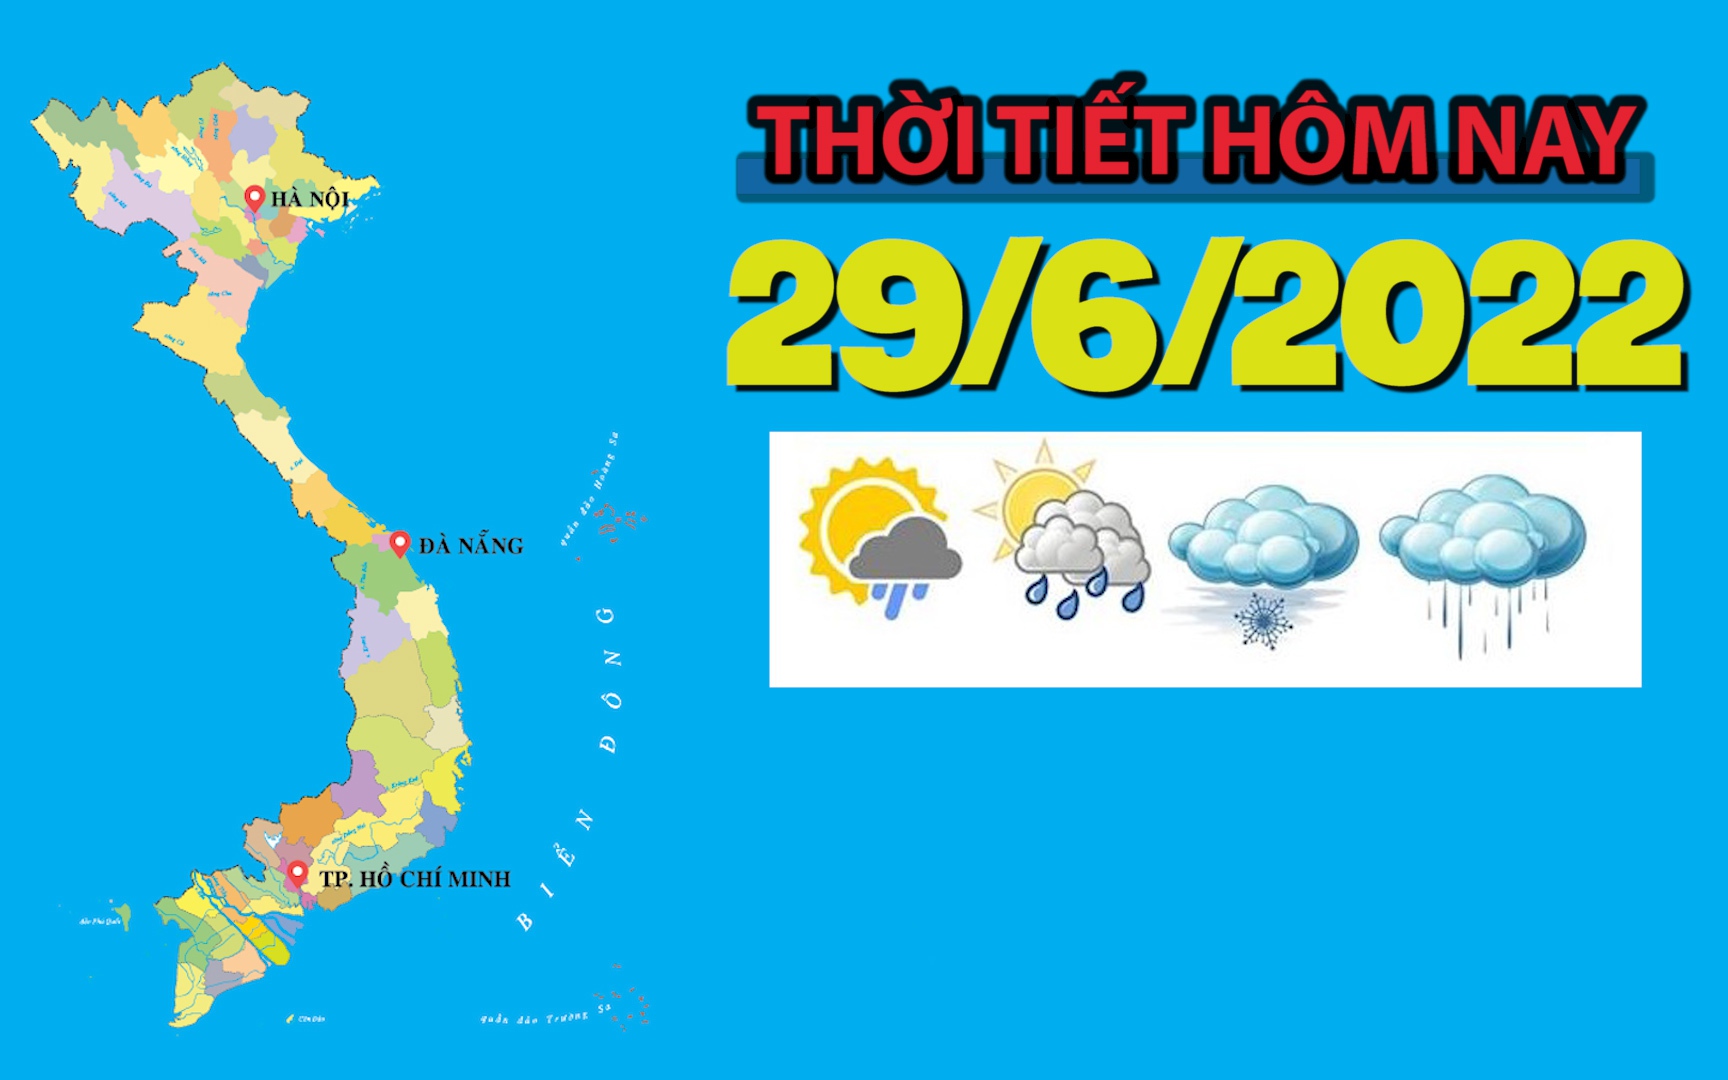 Thời tiết hôm nay 29/6/2022: Bắc Bộ, Tây Nguyên và Nam Bộ ngày nắng, chiều tối có mưa